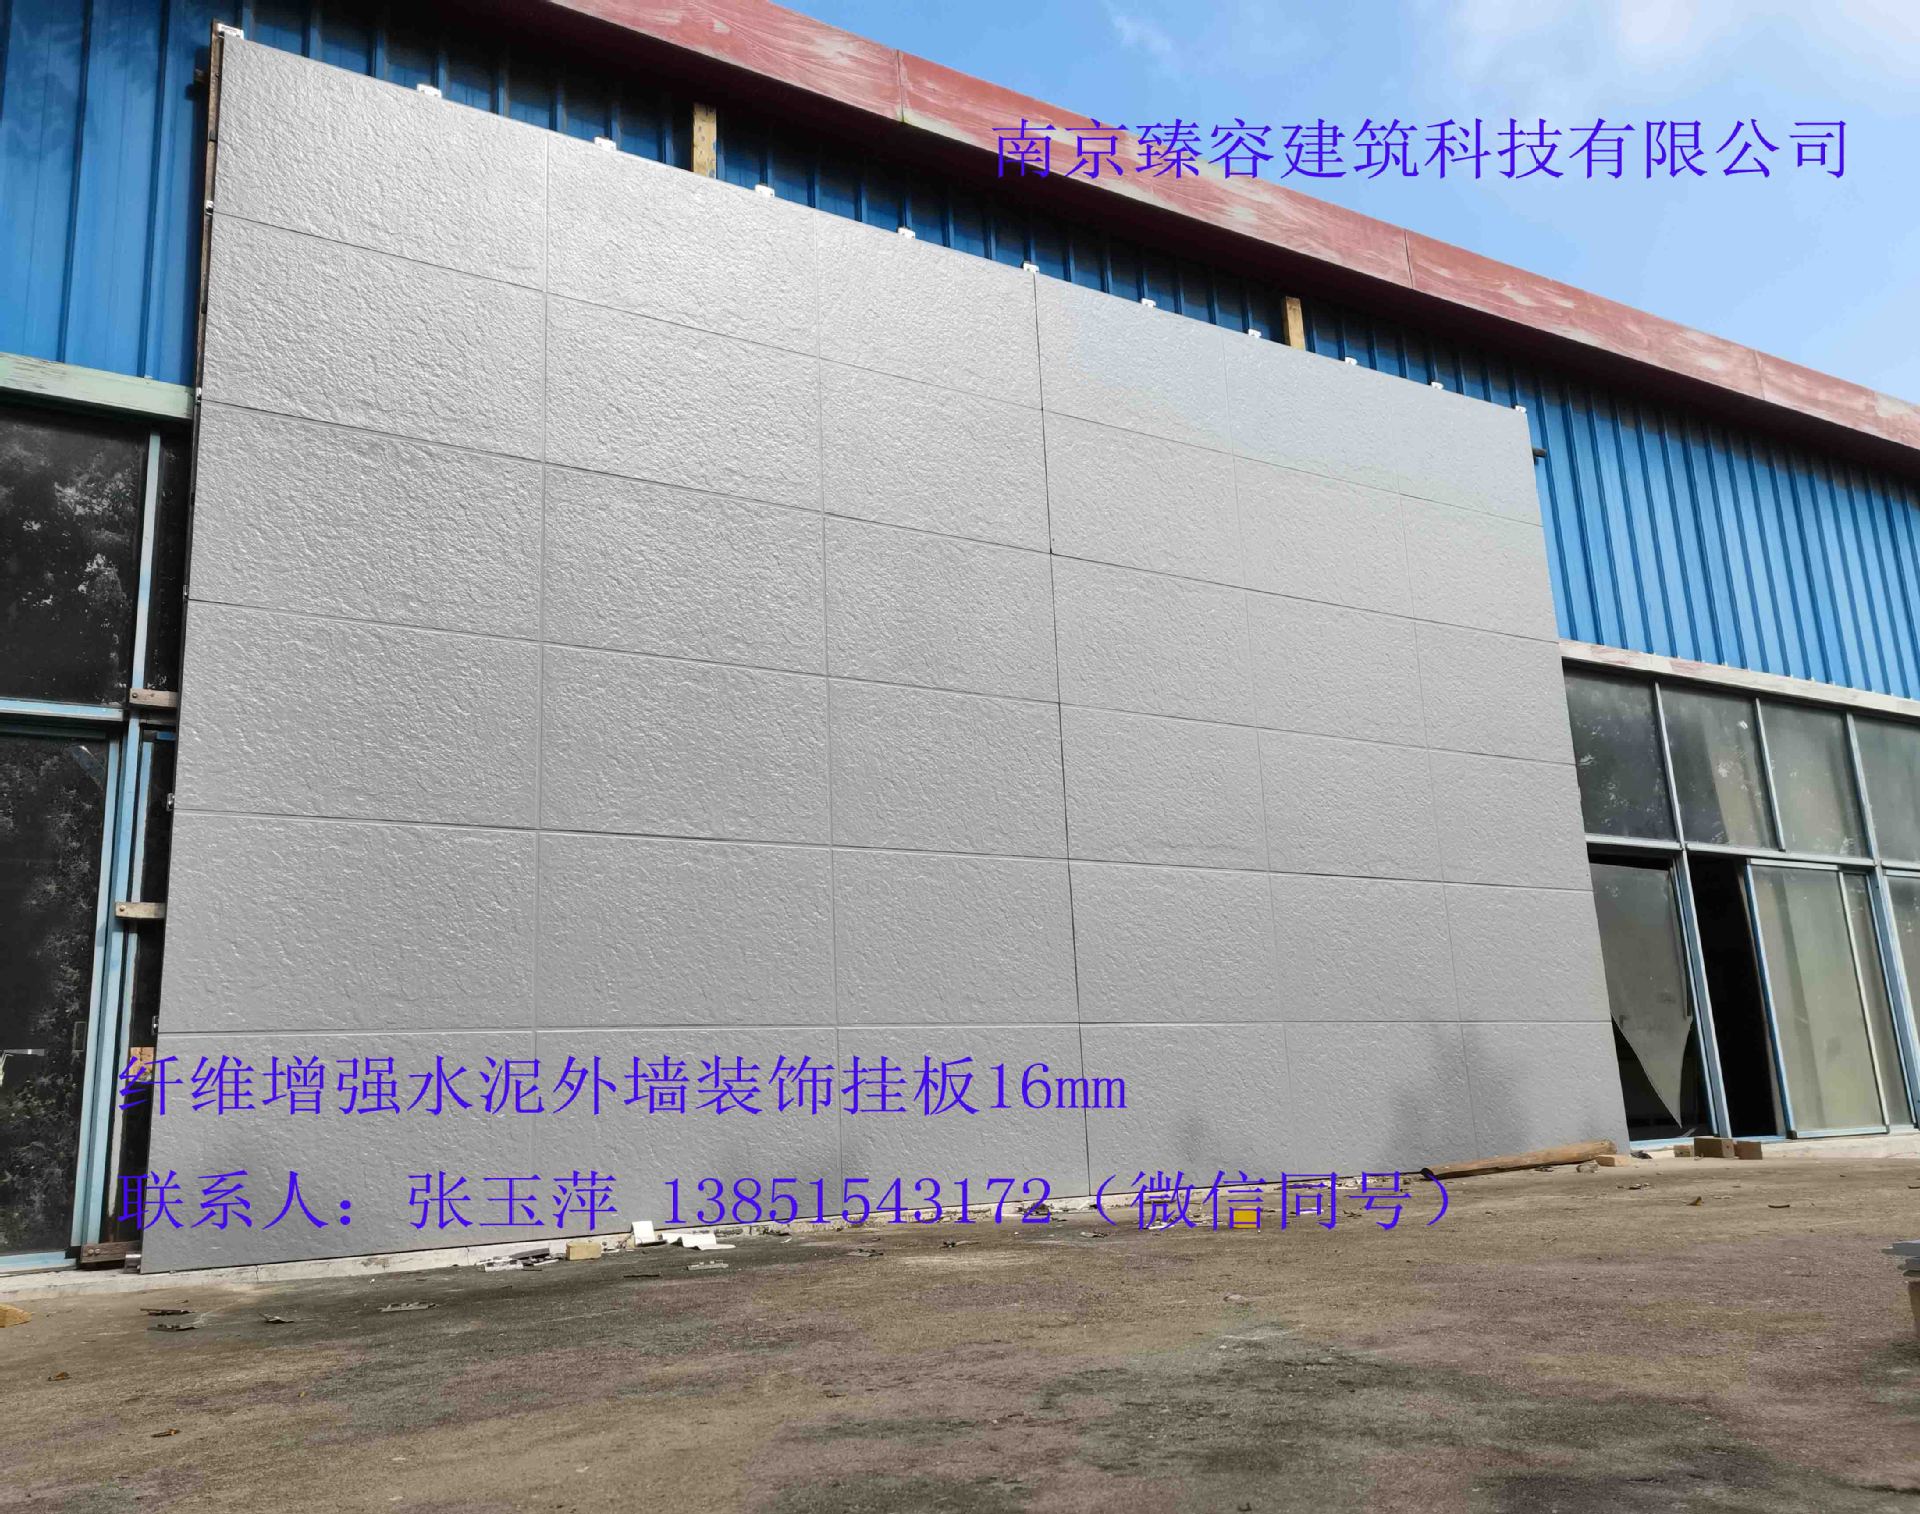 水泥板外墙挂板水泥板木丝板美岩板纤维增强水泥外墙装饰挂板16mm